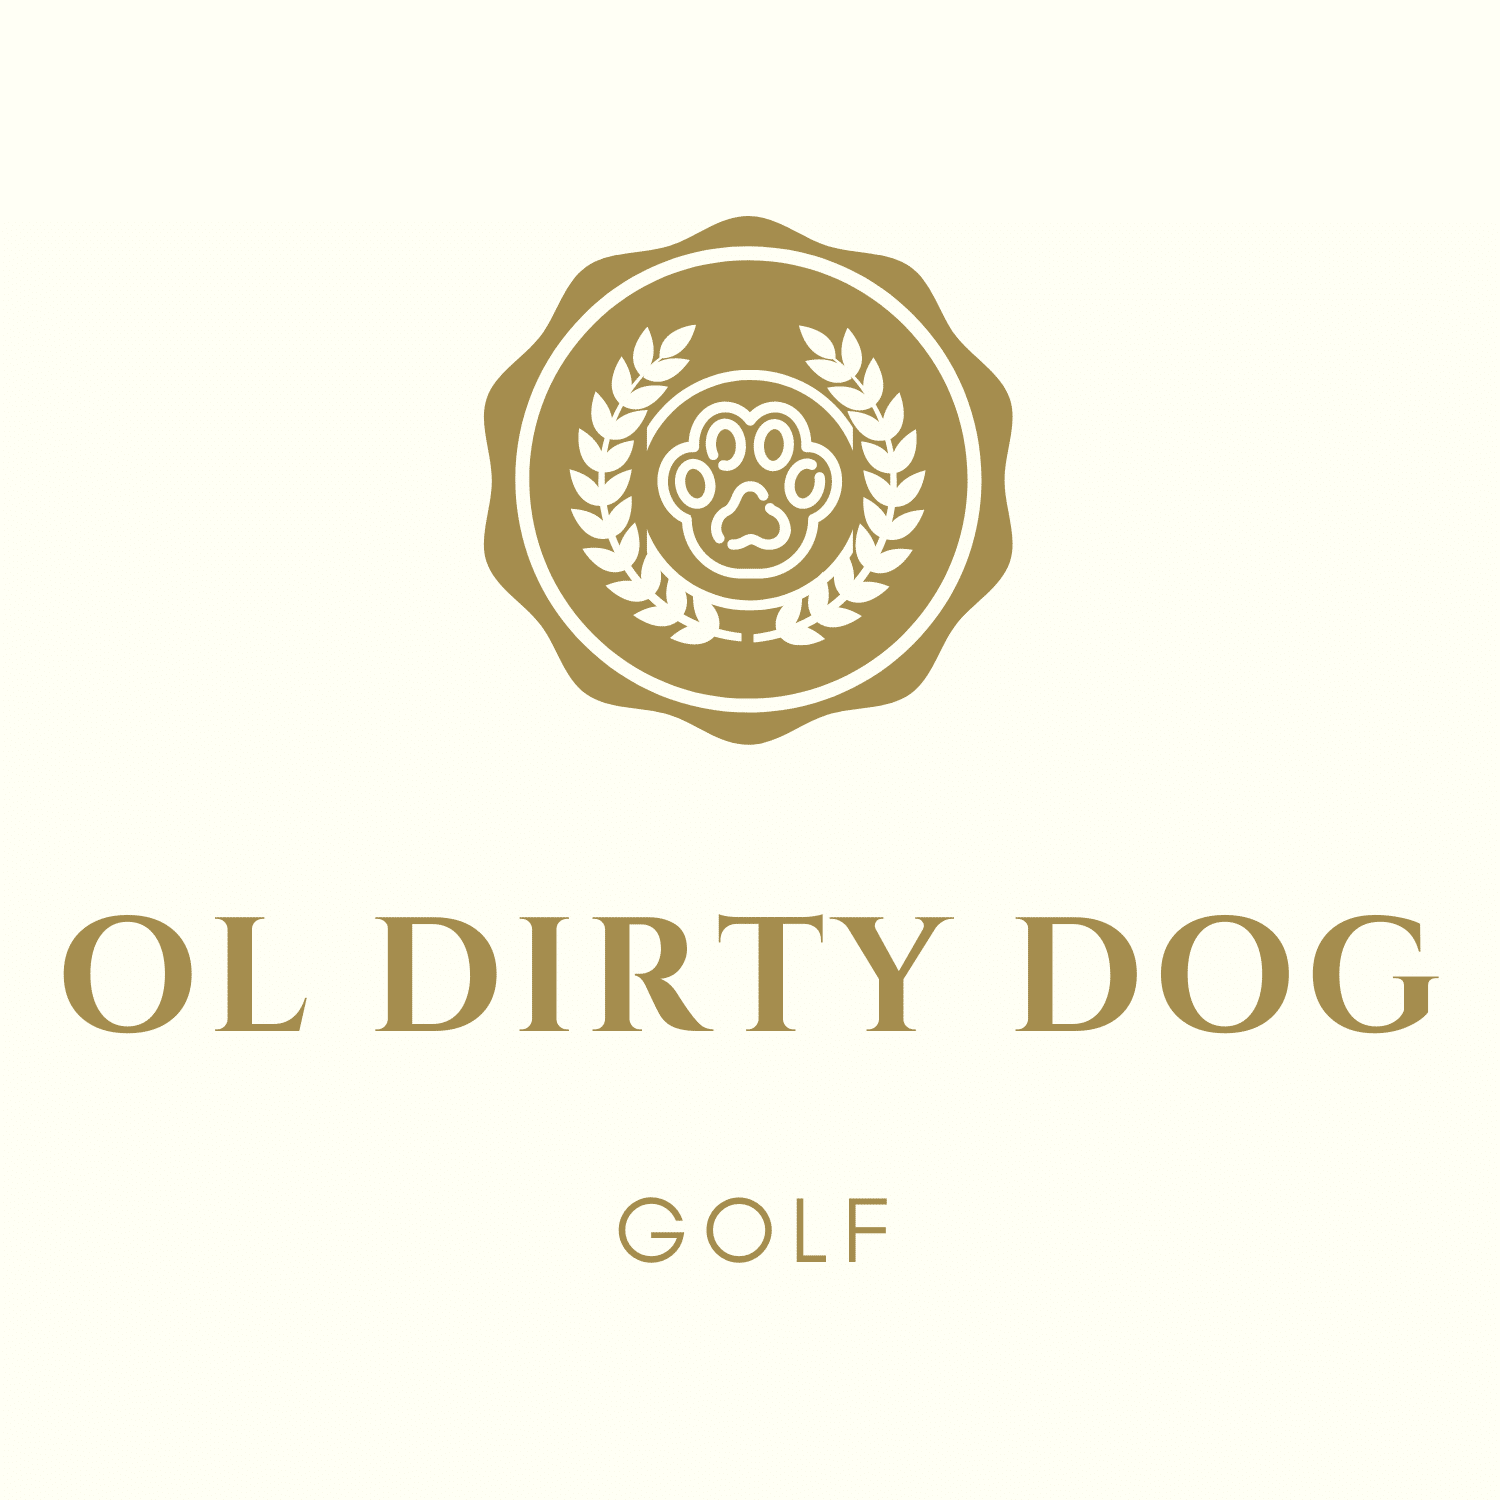 Ol’ Dirty Dog Golf